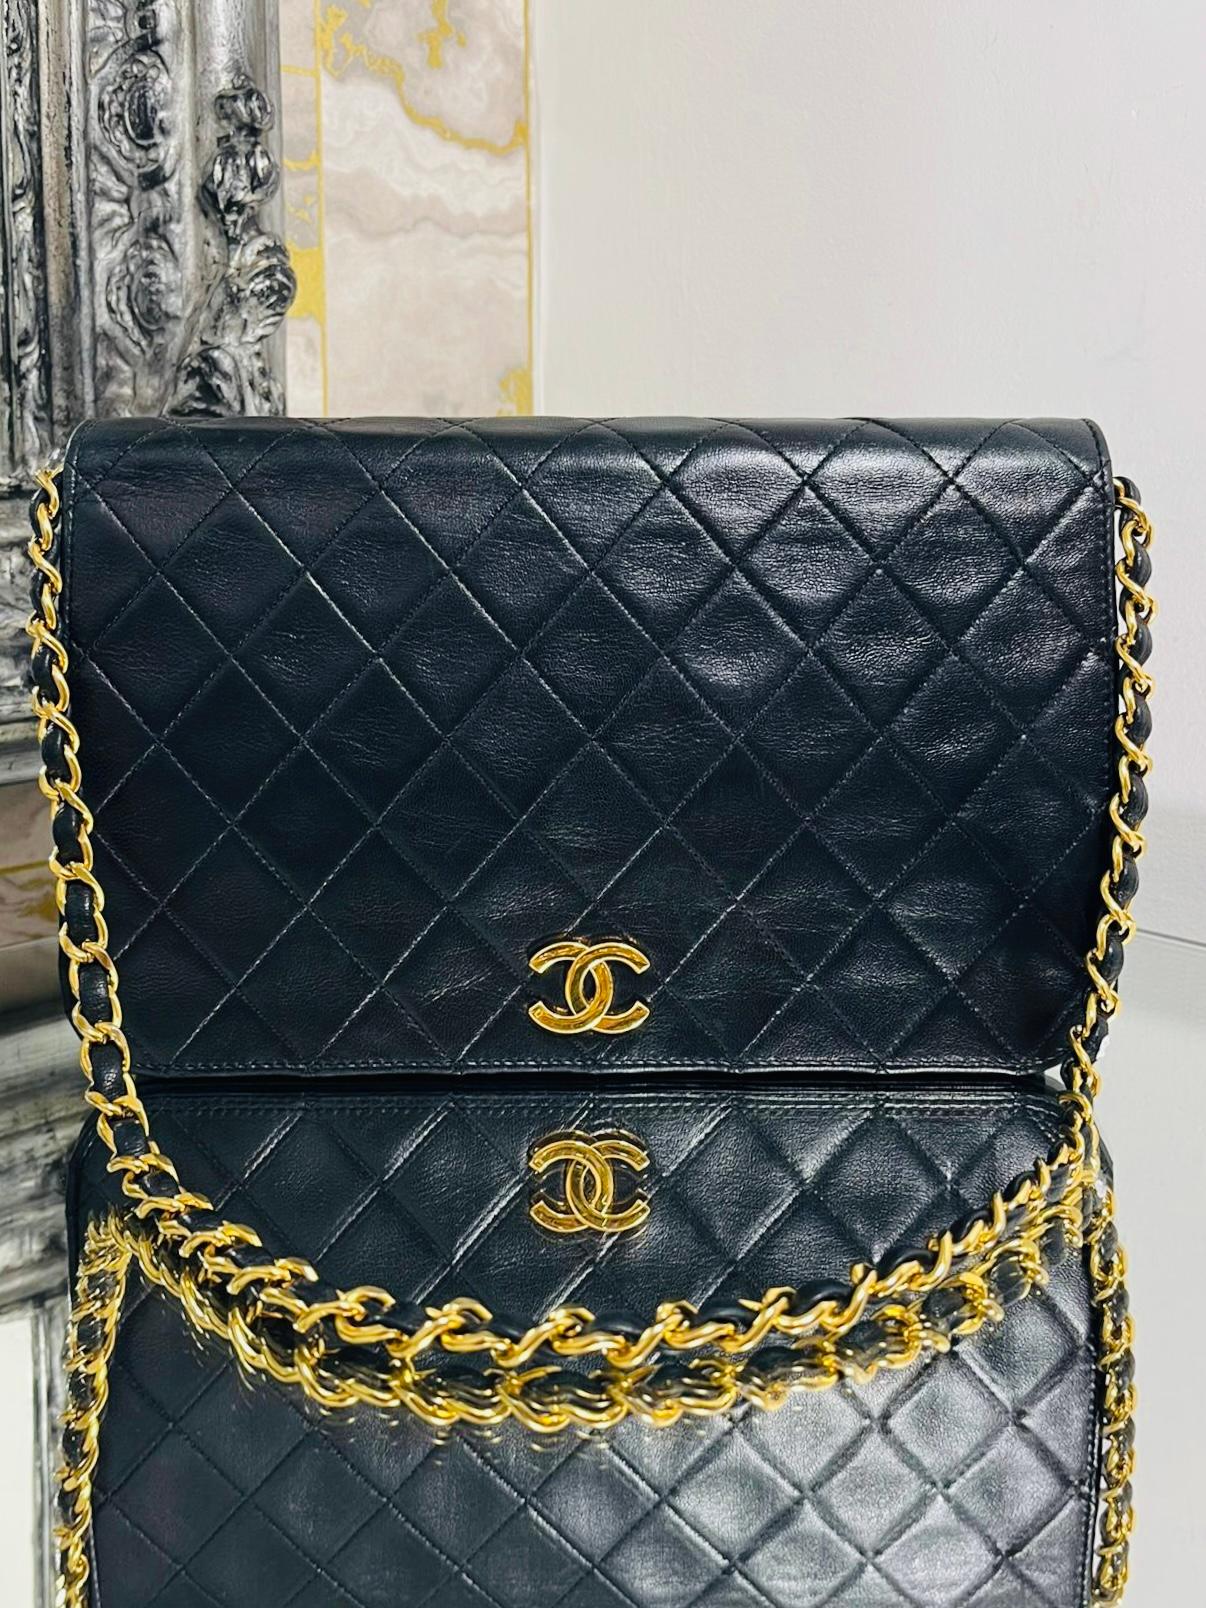 Chanel Vintage Timeless Single Flap Bag

Cuir noir à piqûres de diamant et accessoires plaqués or 24k.

Le logo 'CC' et une bandoulière unique en chaîne et en cuir. Bourgogne

intérieur en cuir. Datant d'environ les années 1980. Pas de code de série